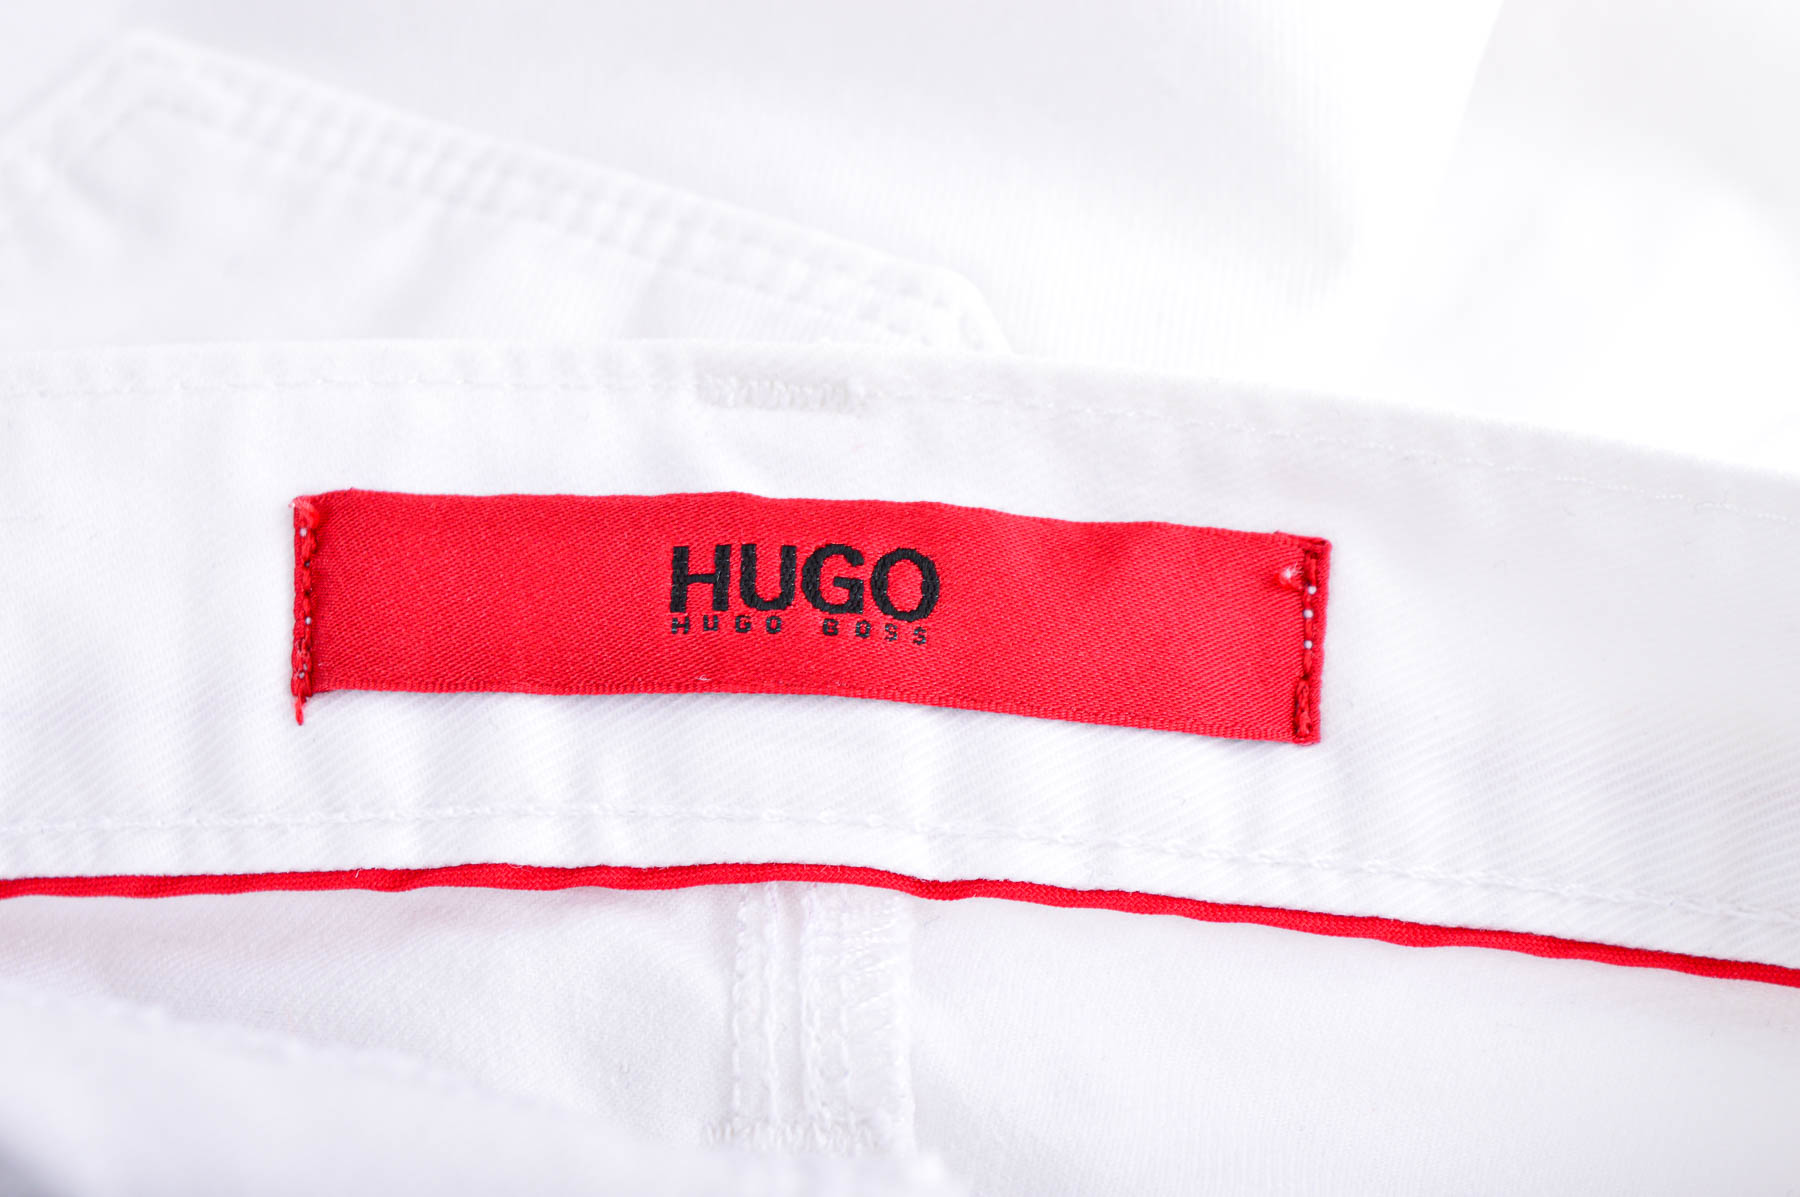 Men's trousers - HUGO BOSS - 2